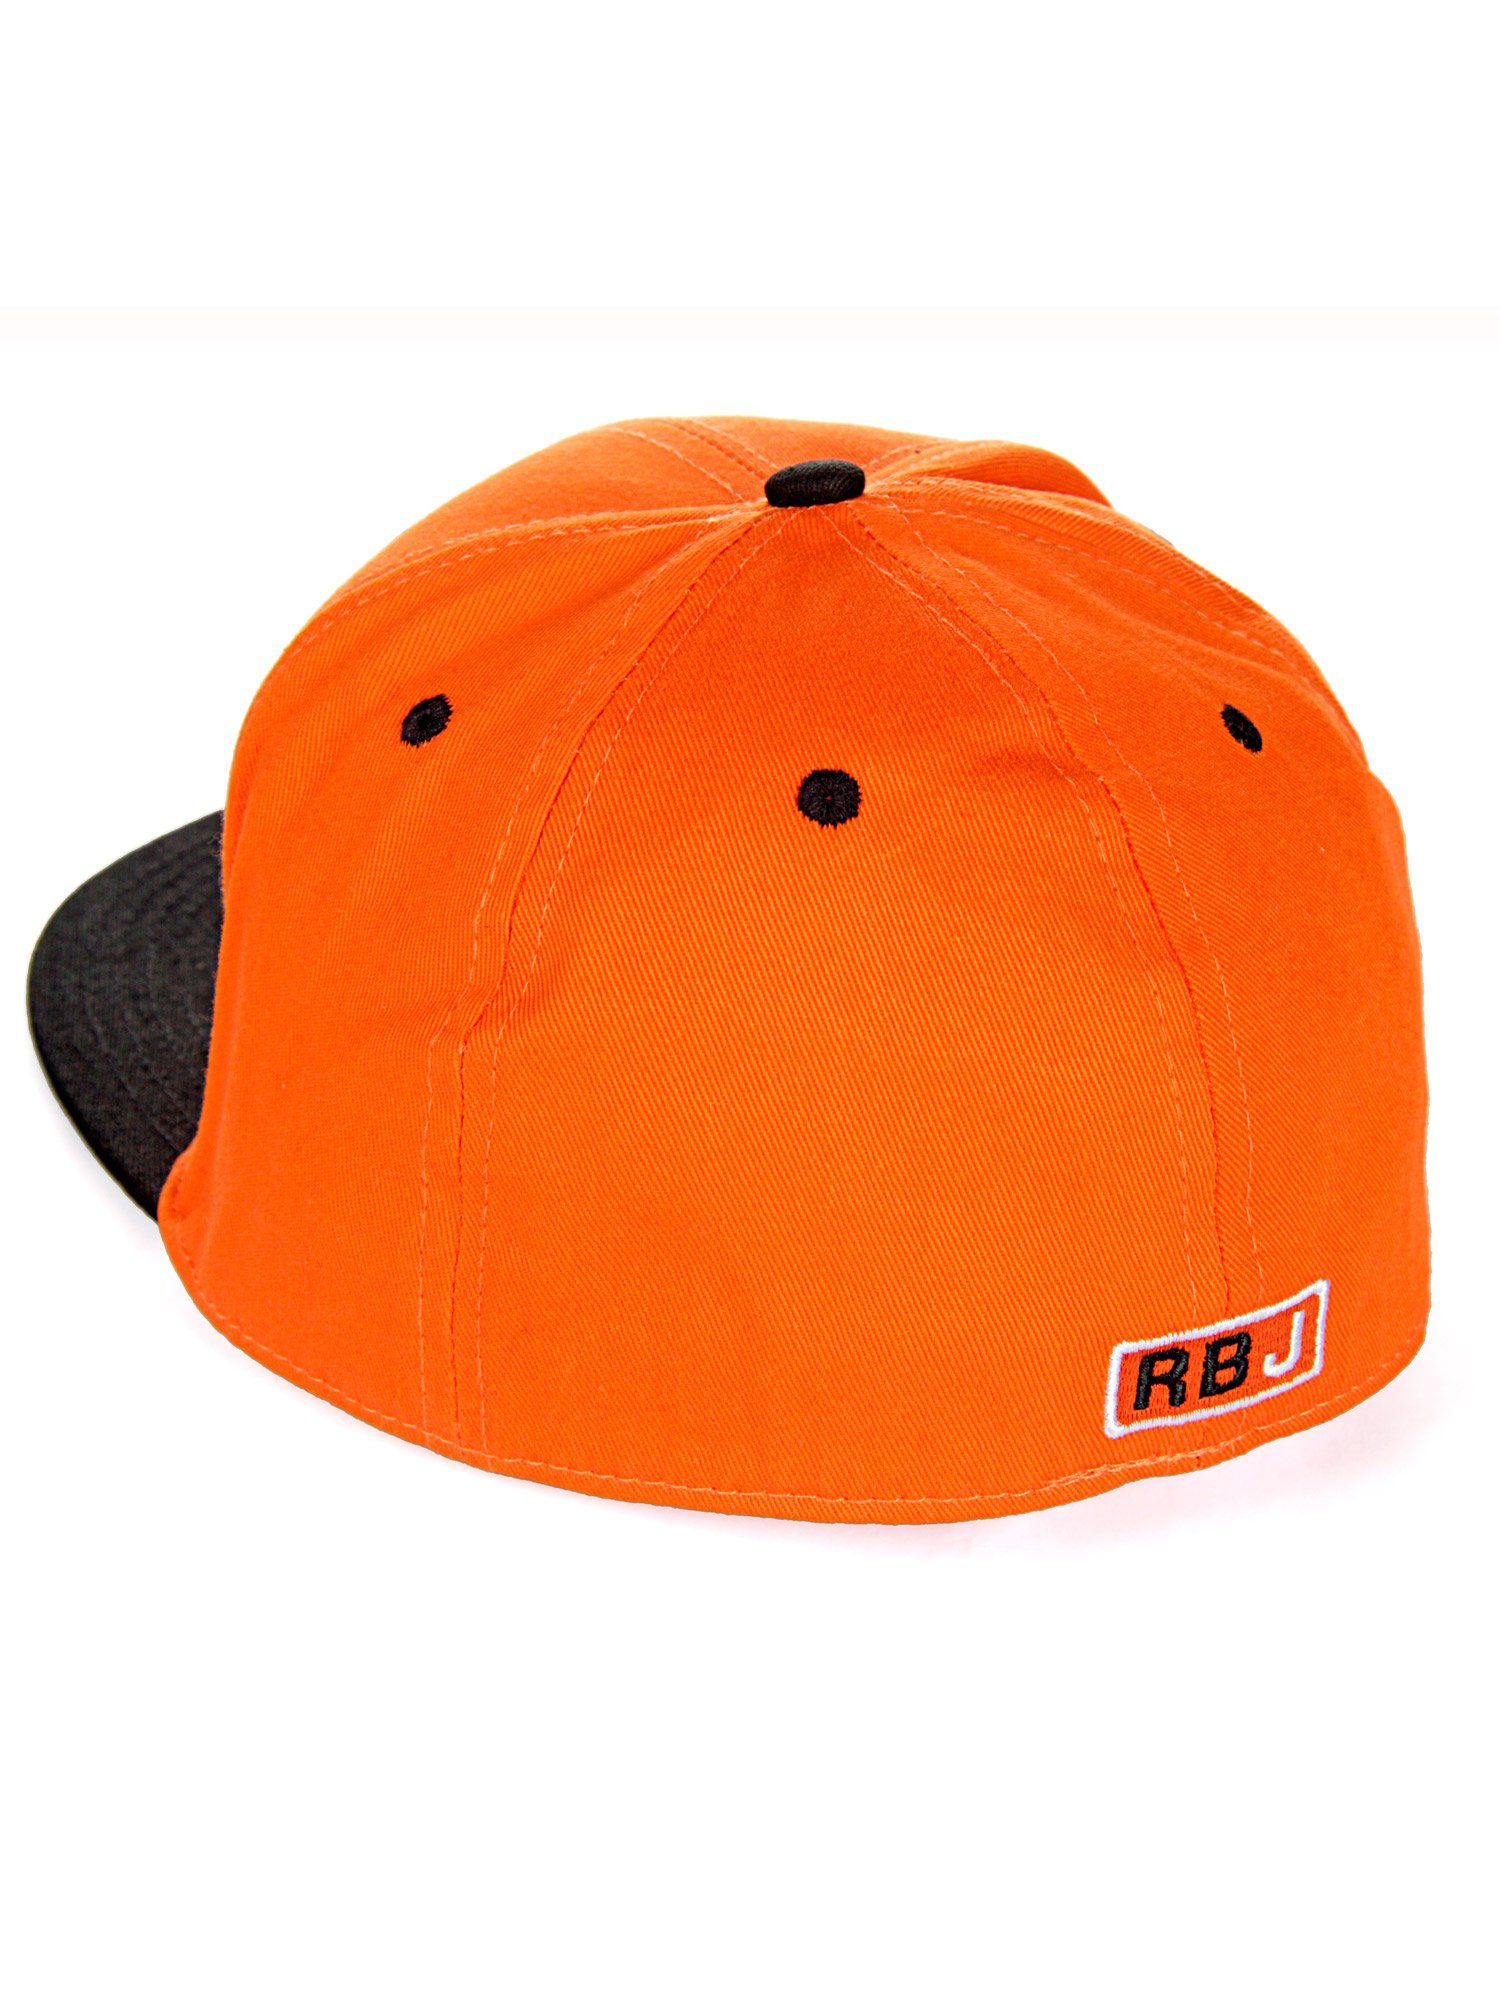 RedBridge Baseball Cap Durham Schirm mit kontrastfarbigem orange-schwarz